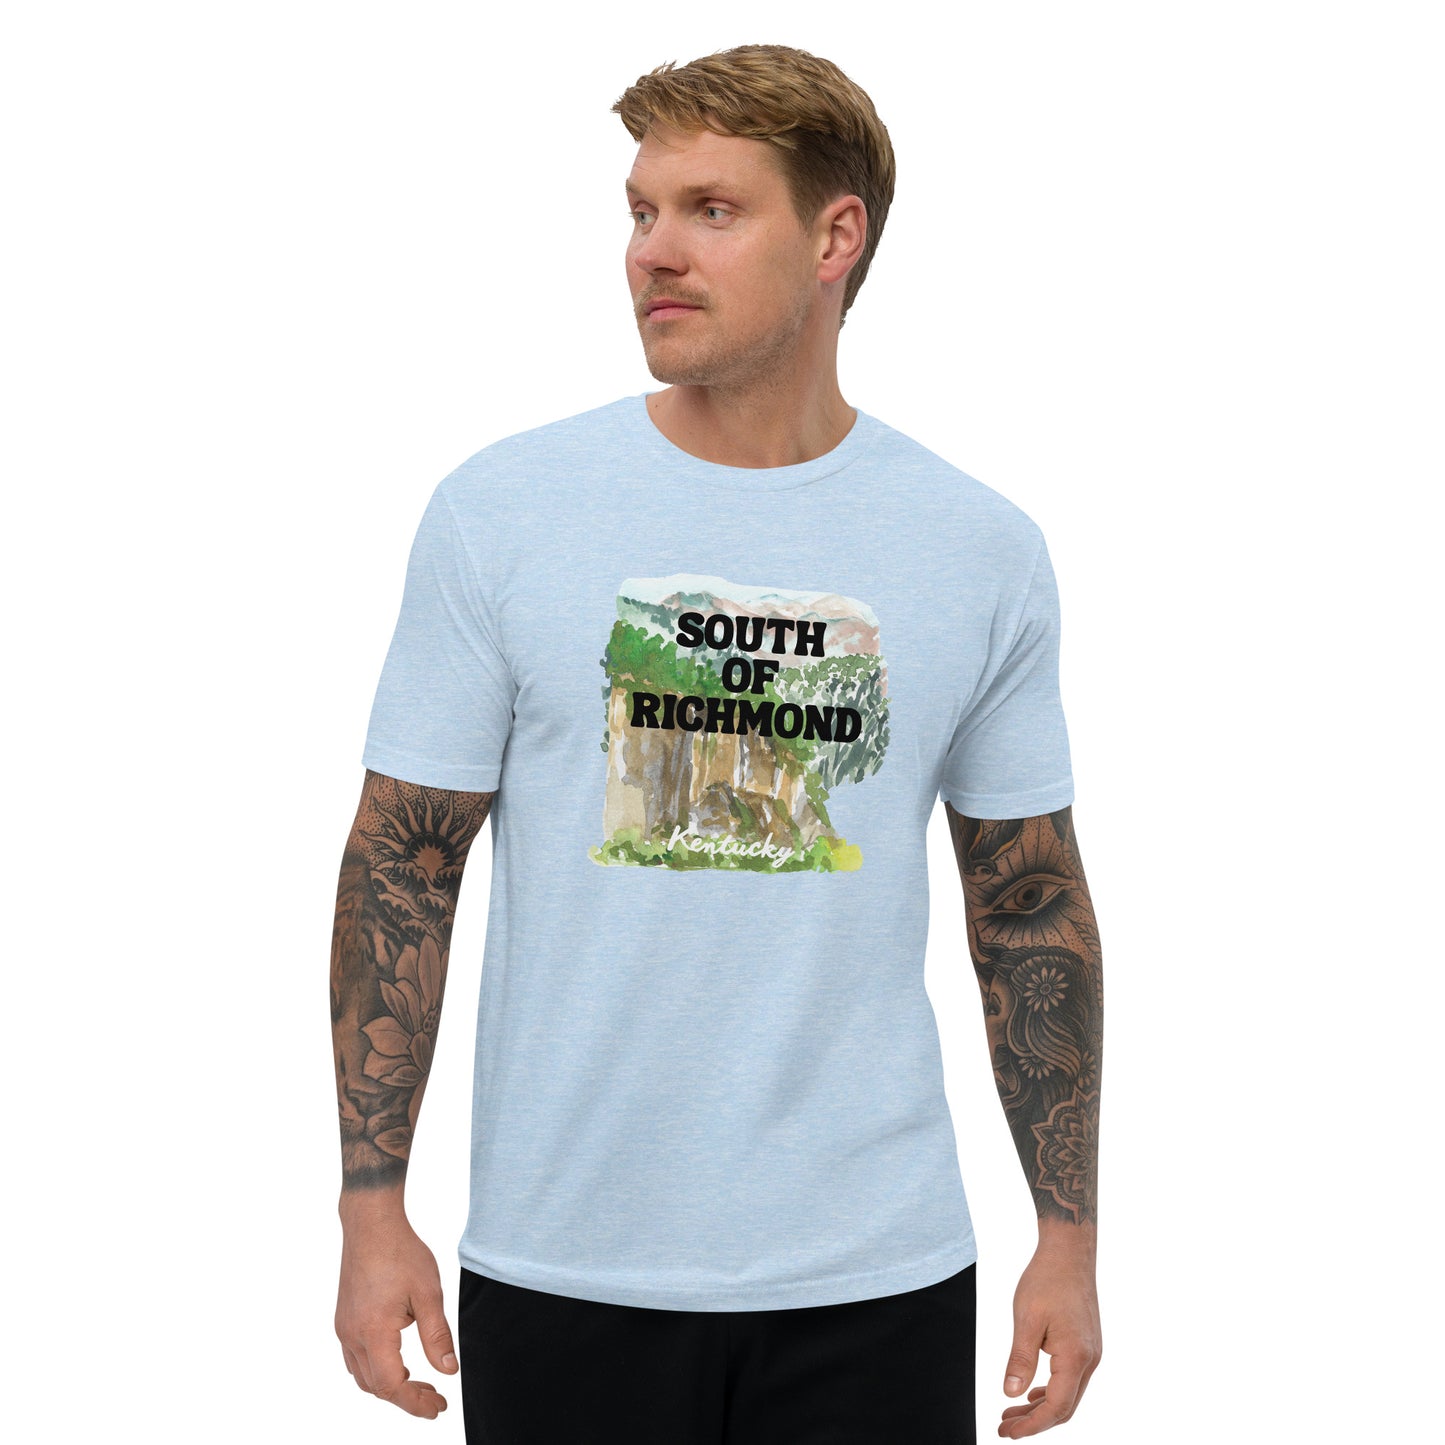 South of Richmond - Kentucky - Short Sleeve T-shirt